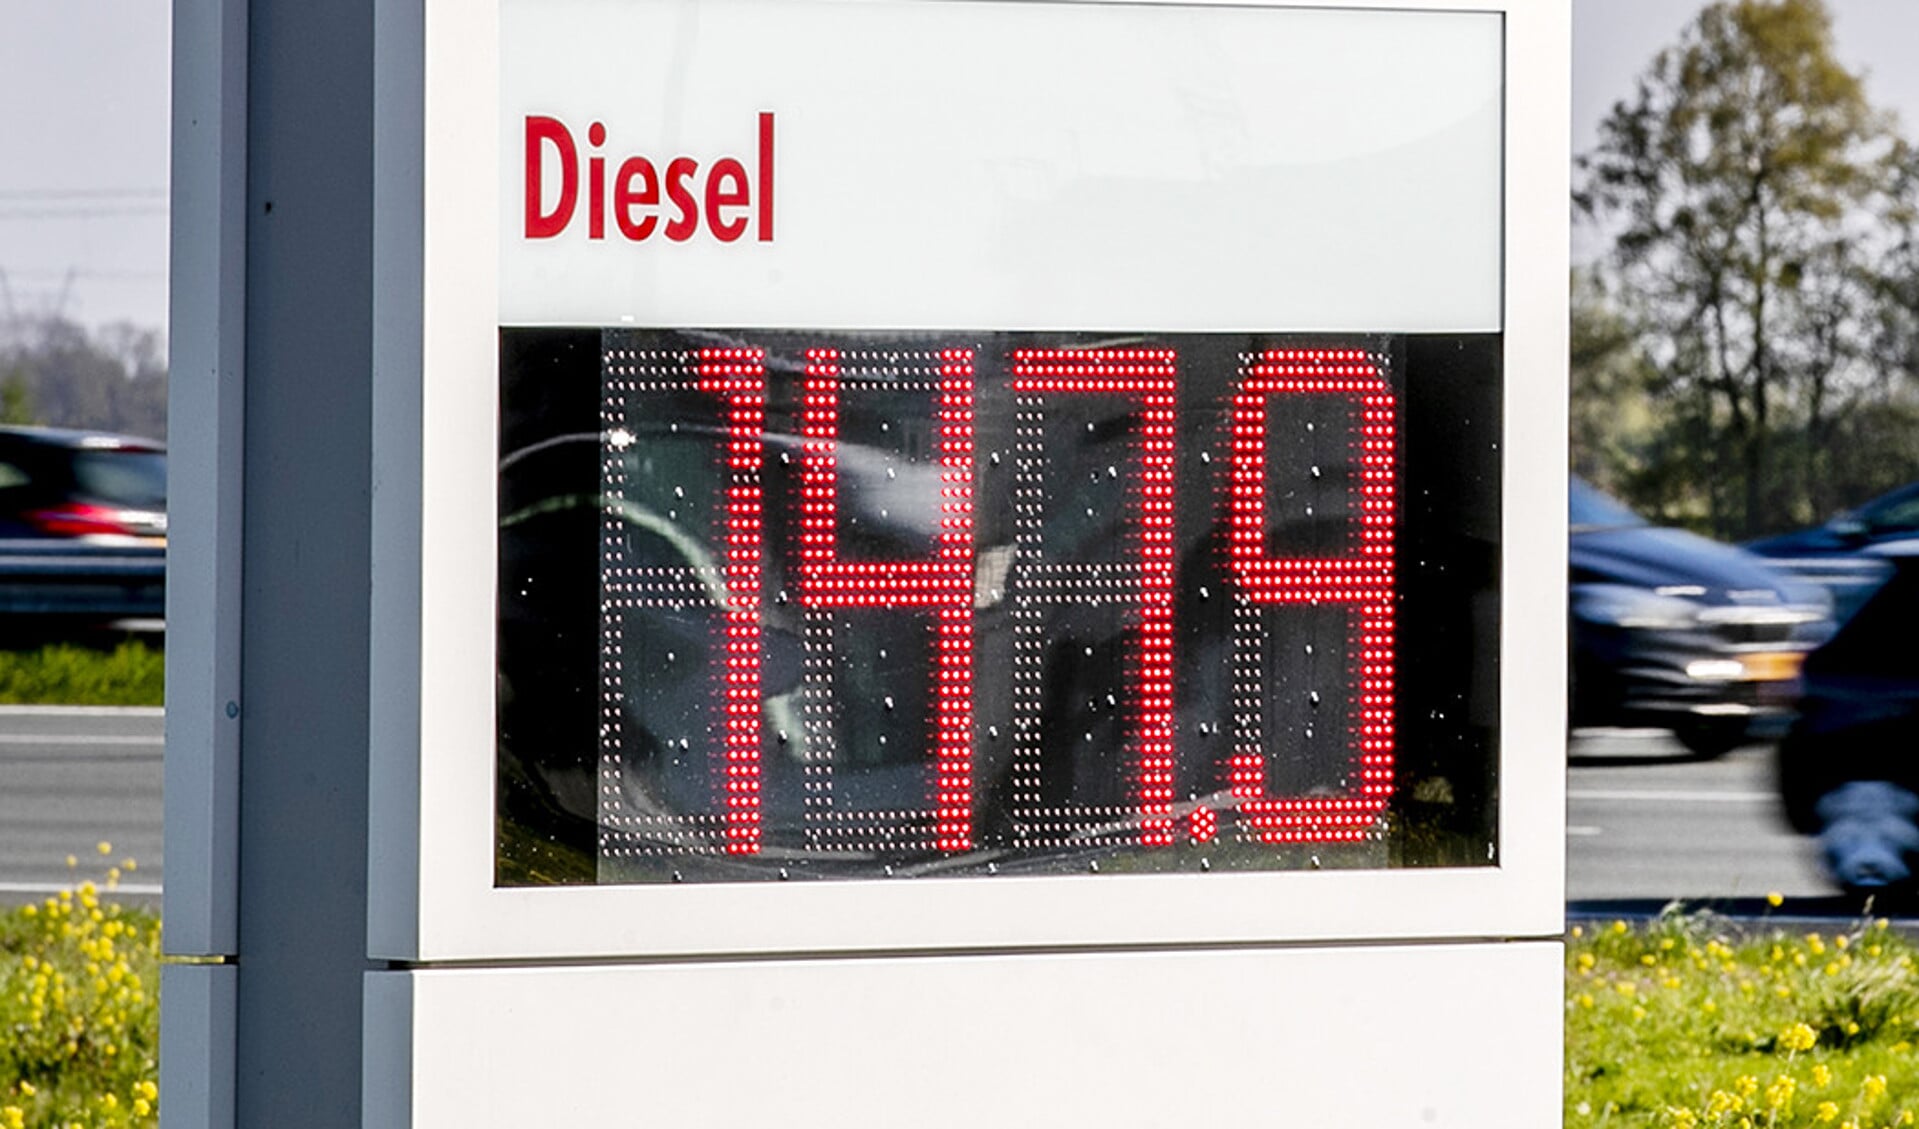 Een deel van de diesel aan de pomp moet binnen de Europese Unie bestaan uit biodiesel. Daarmee blijkt nu te zijn gerommeld.